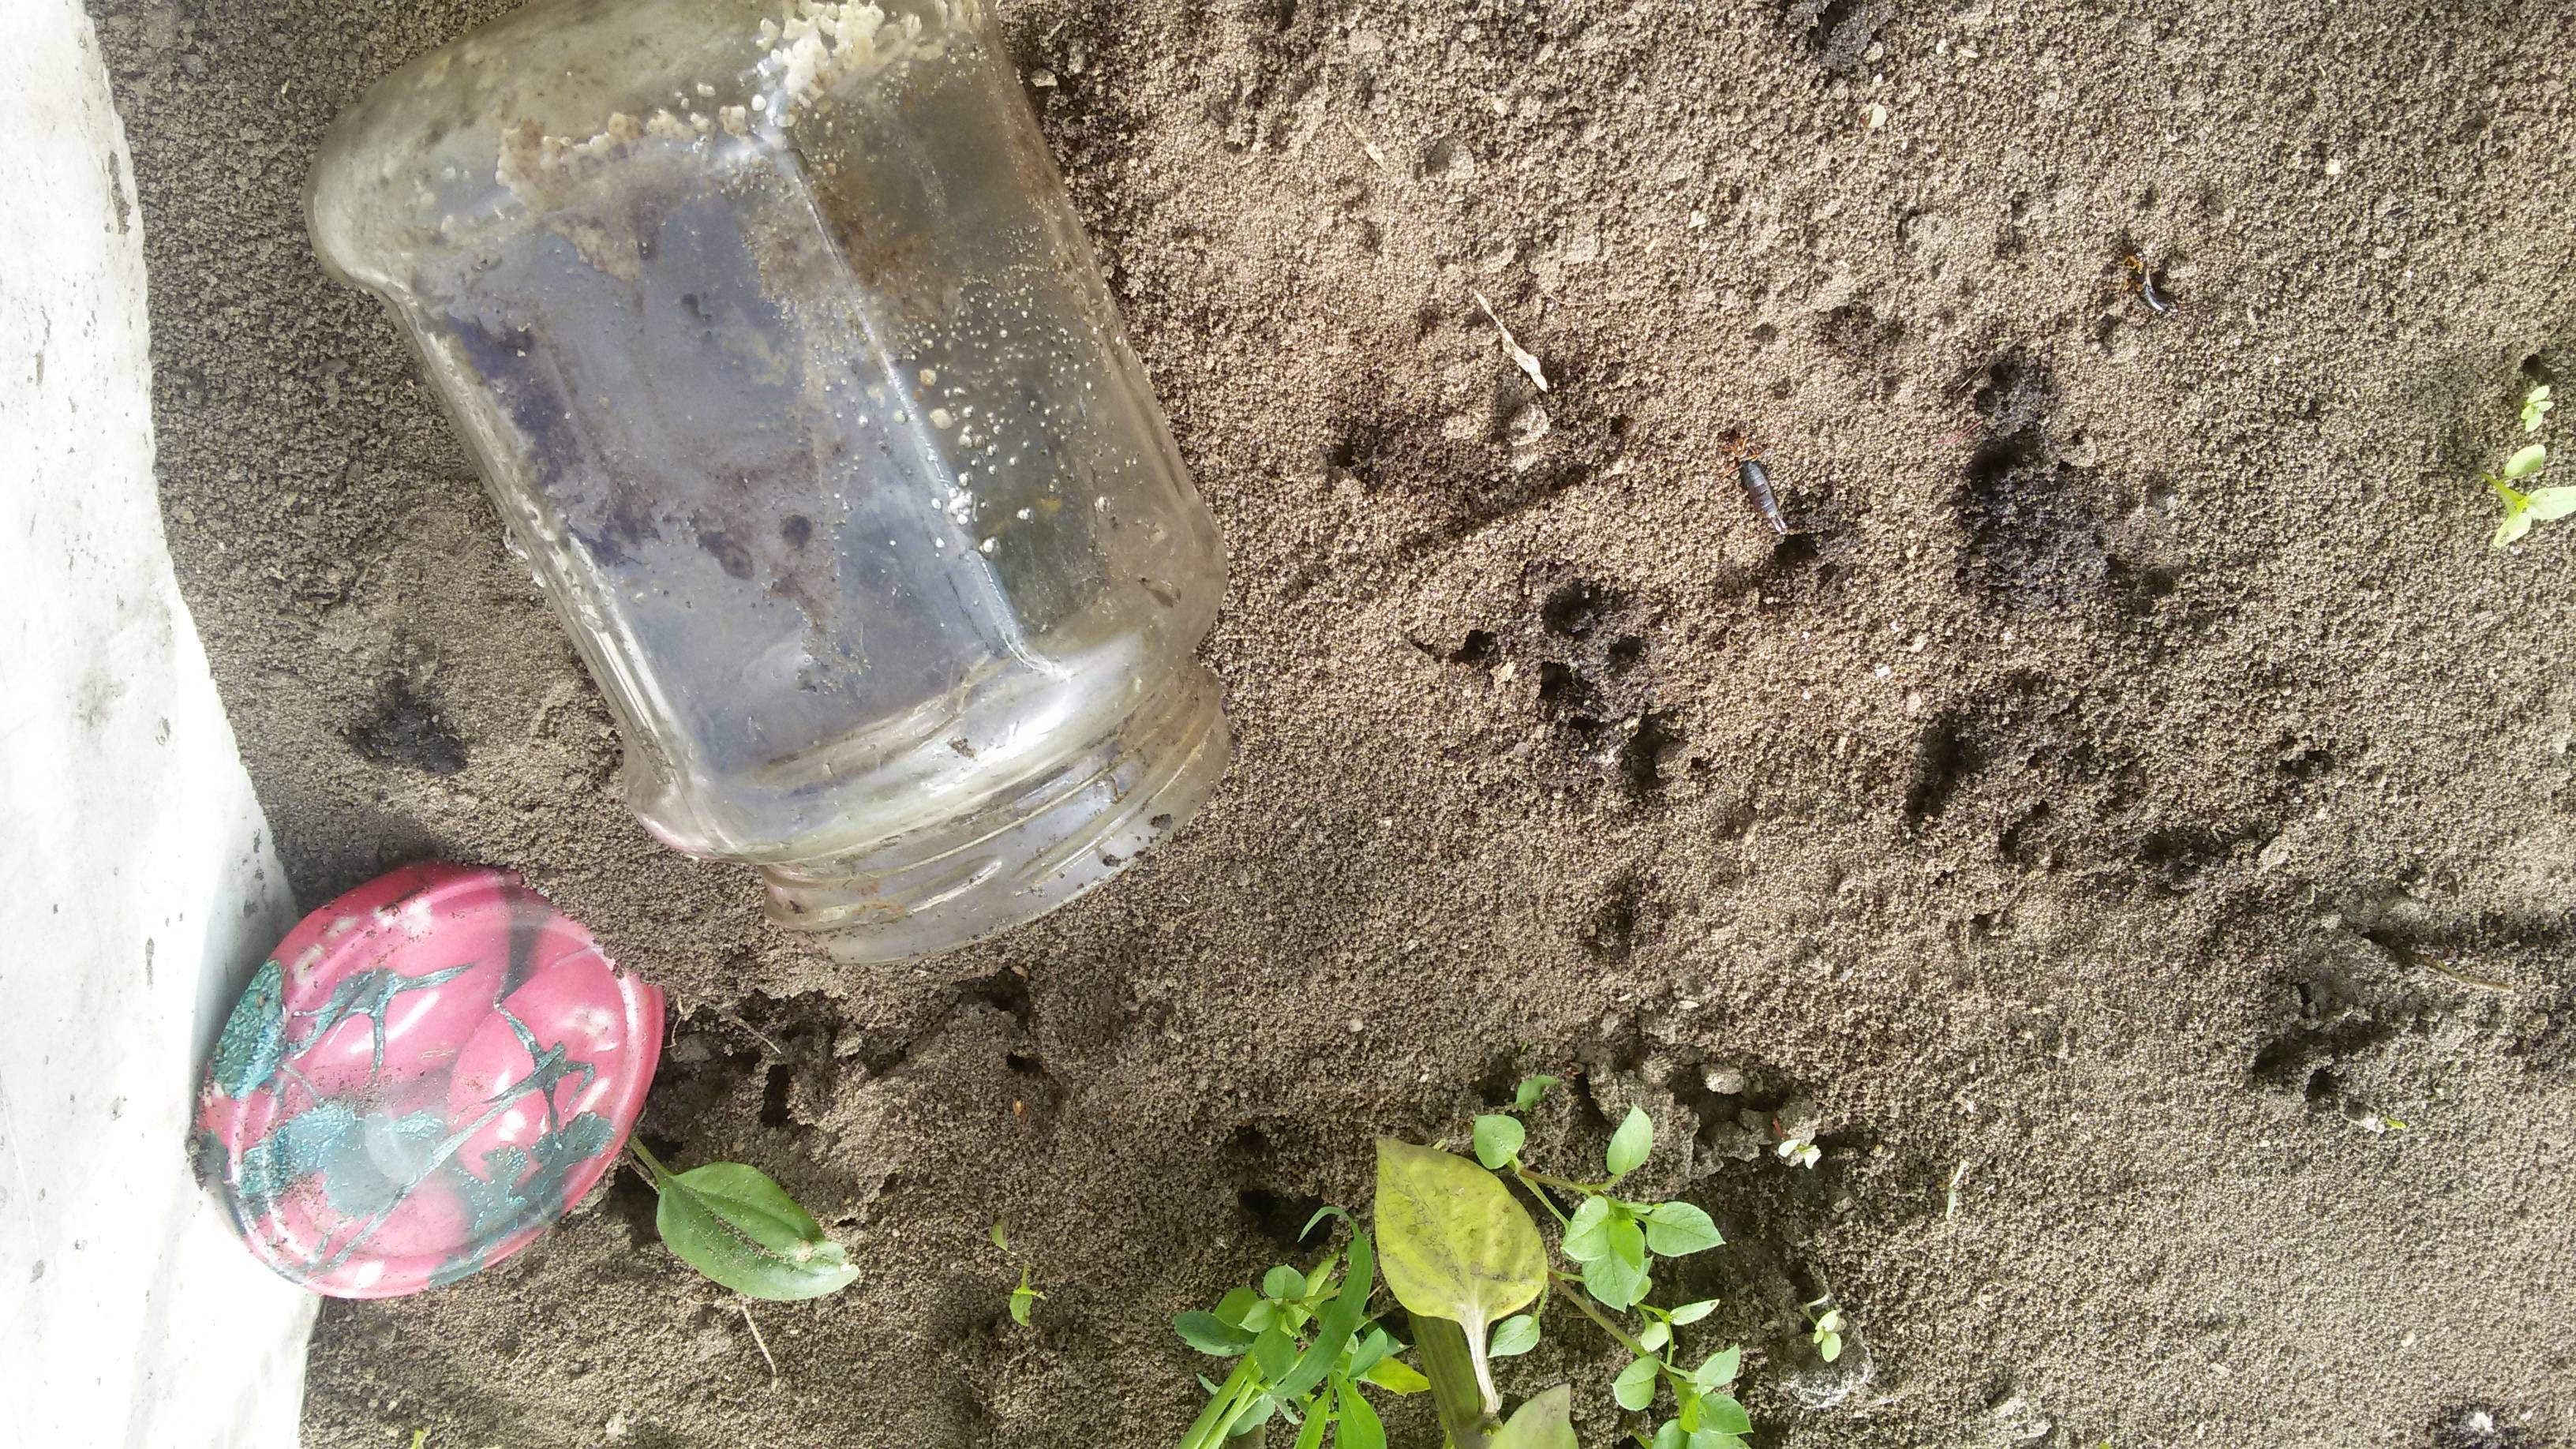 Как избавиться от муравьев в теплице навсегда, откуда они там берутся, какой вред наносят